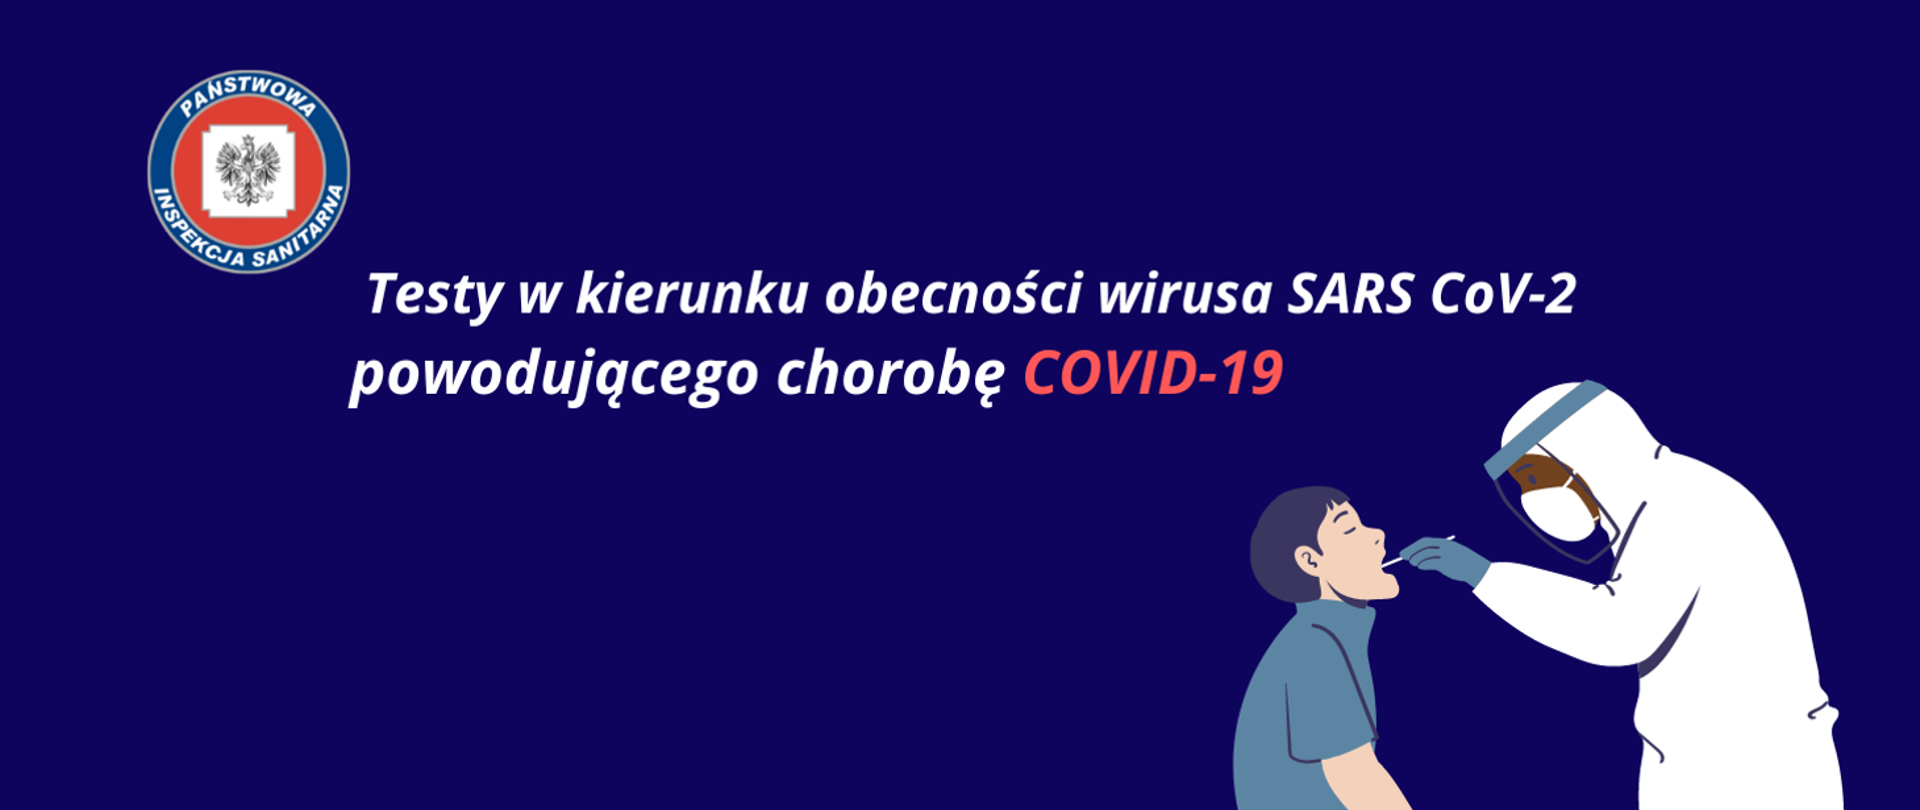 Bezpłatne testy na Covid - 19 